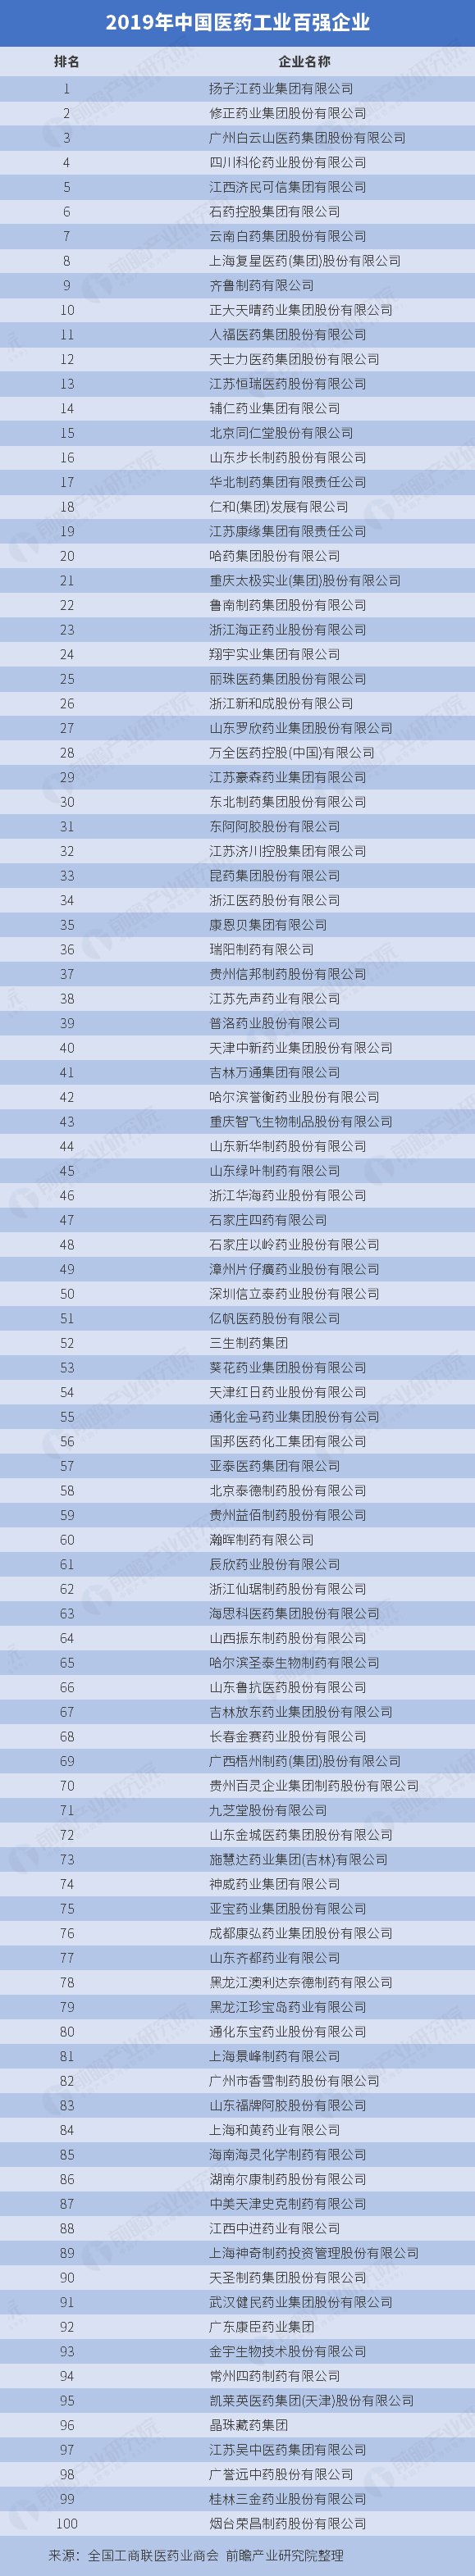 中国医药企业排名